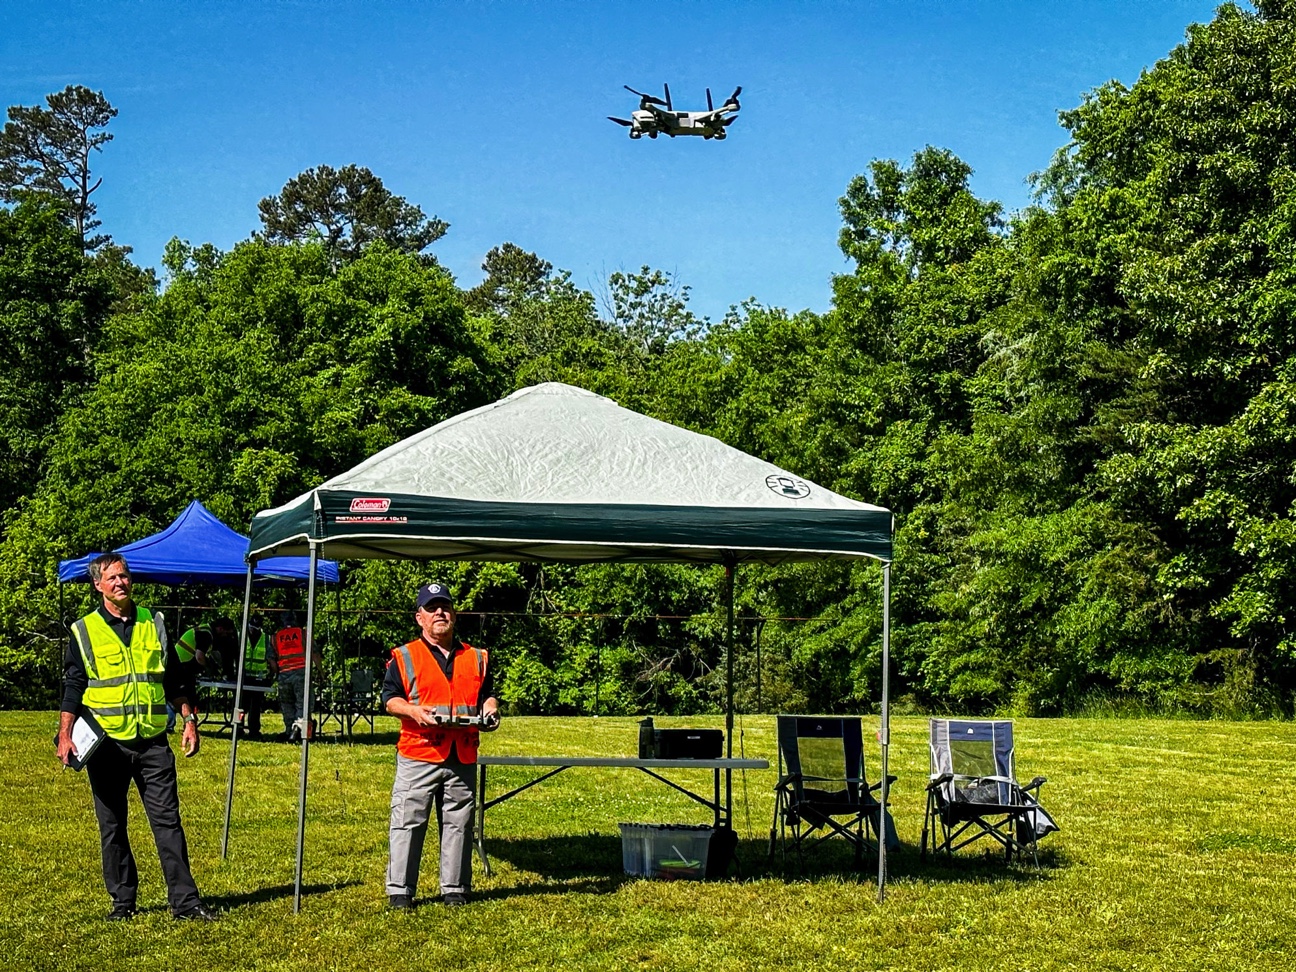 Teal 2 drones Carolina